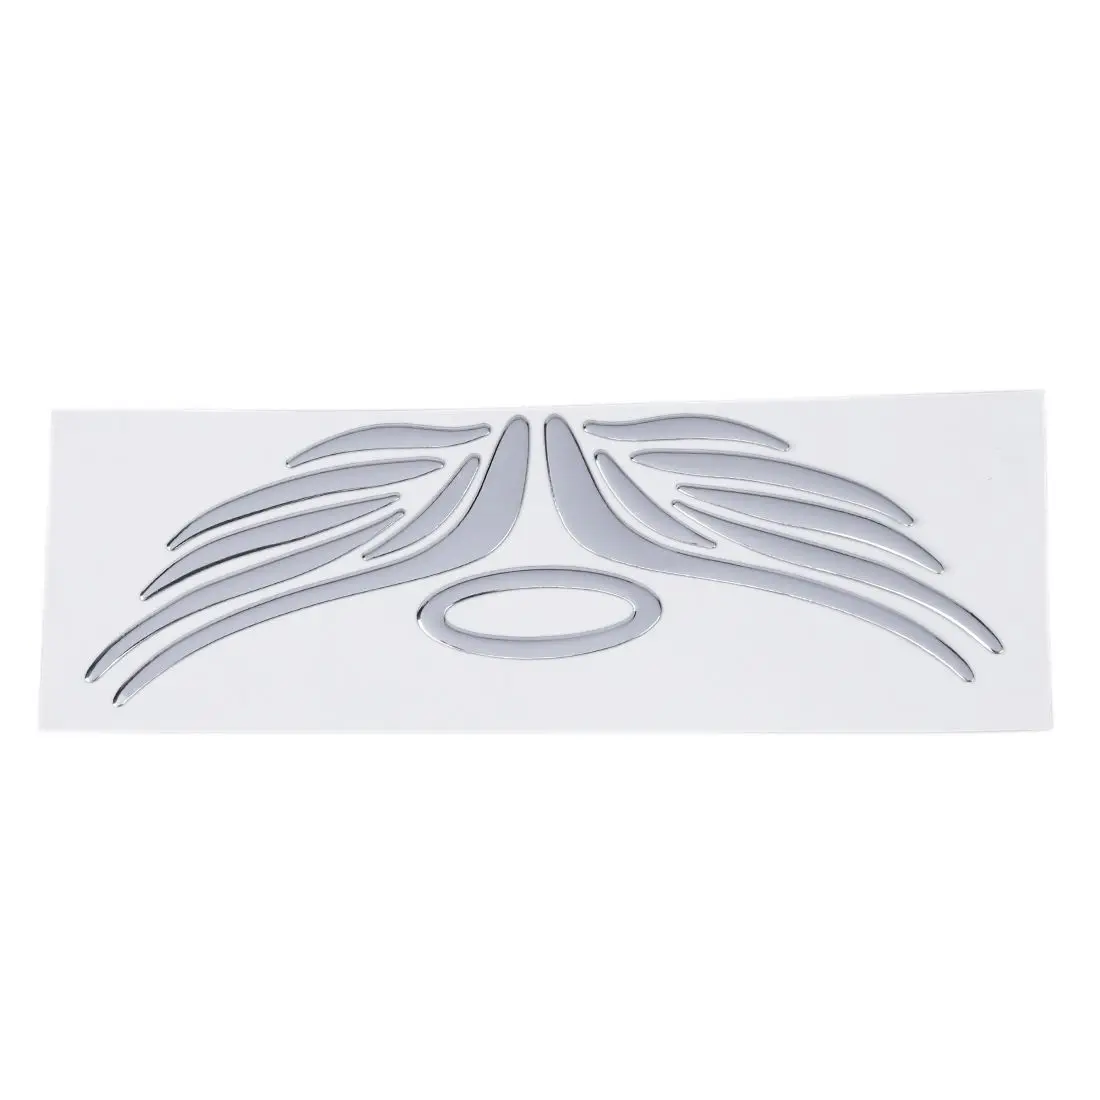 3D Хром Ангел наклейка на крыло наклейка авто эмблема Декоративные наклейки цвет серебристый